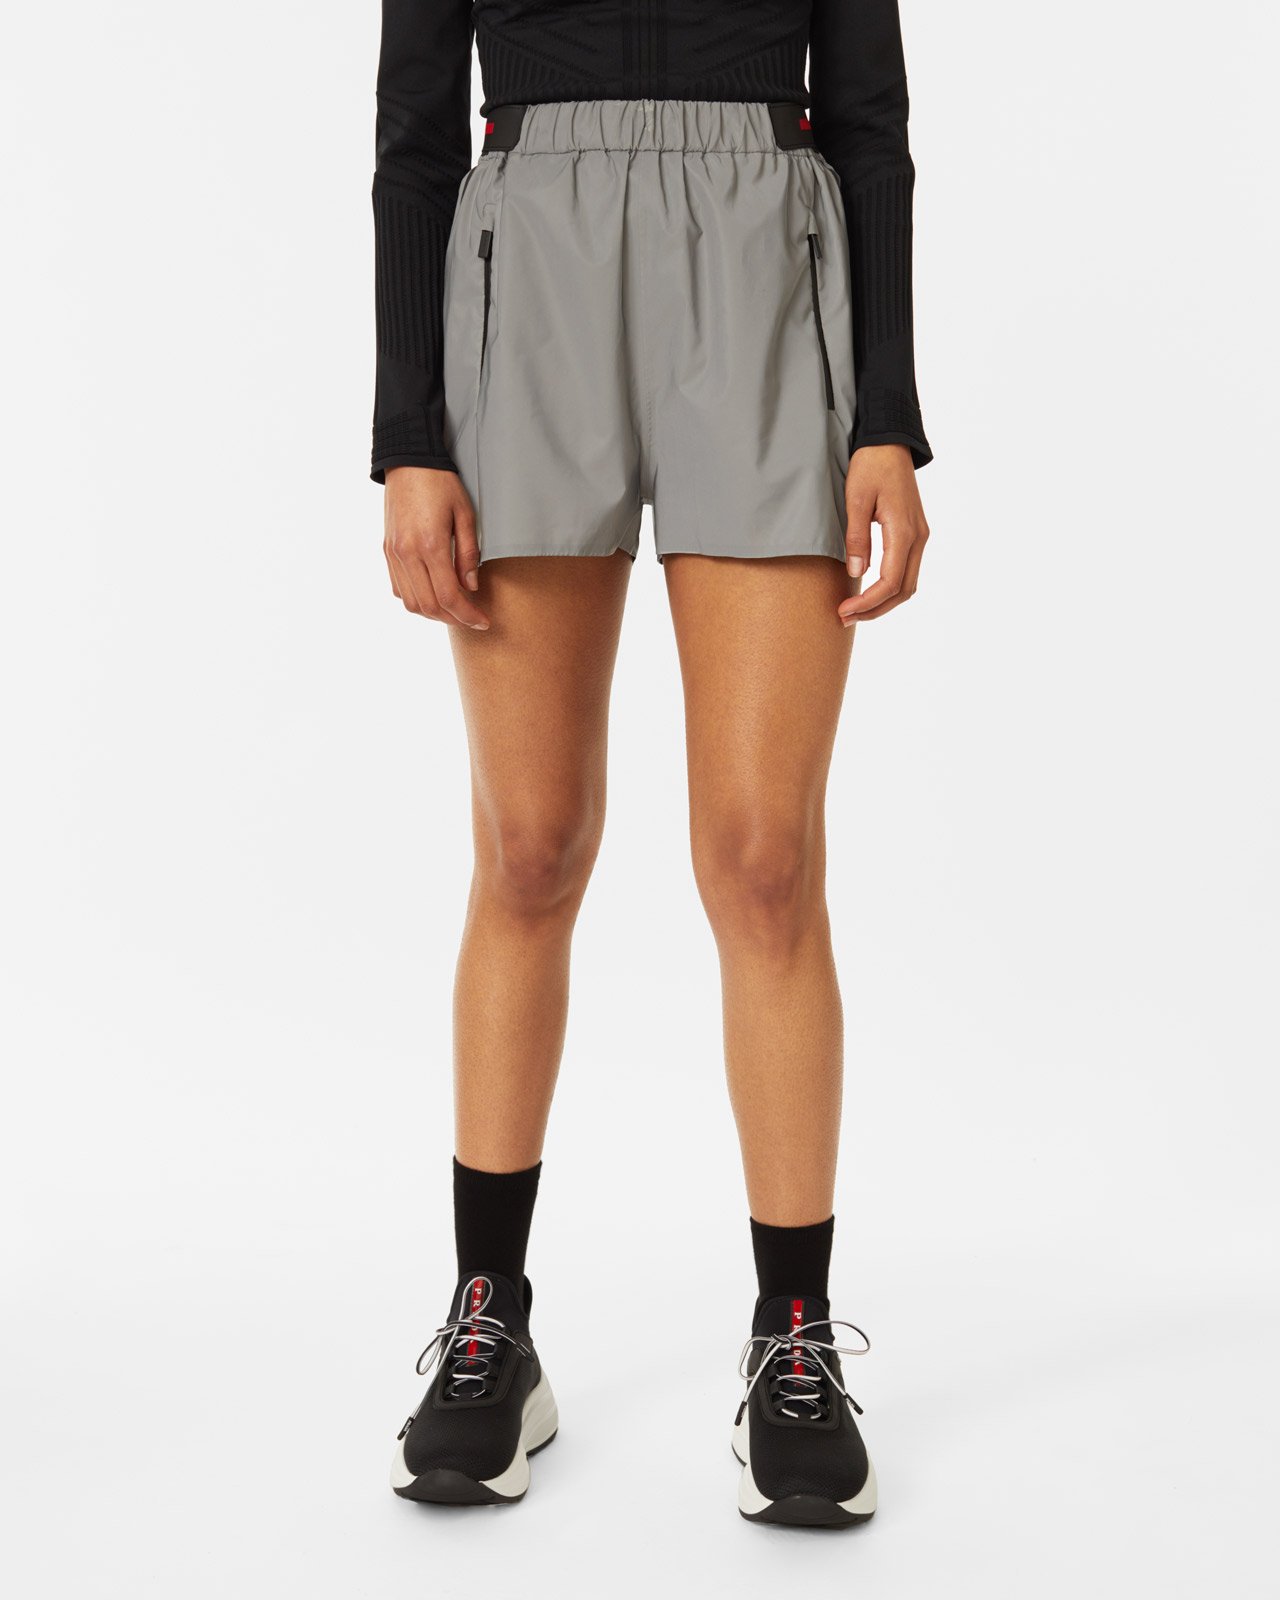 Prada - Women's Reflective Shorts - Clothing - Grey - Image 2